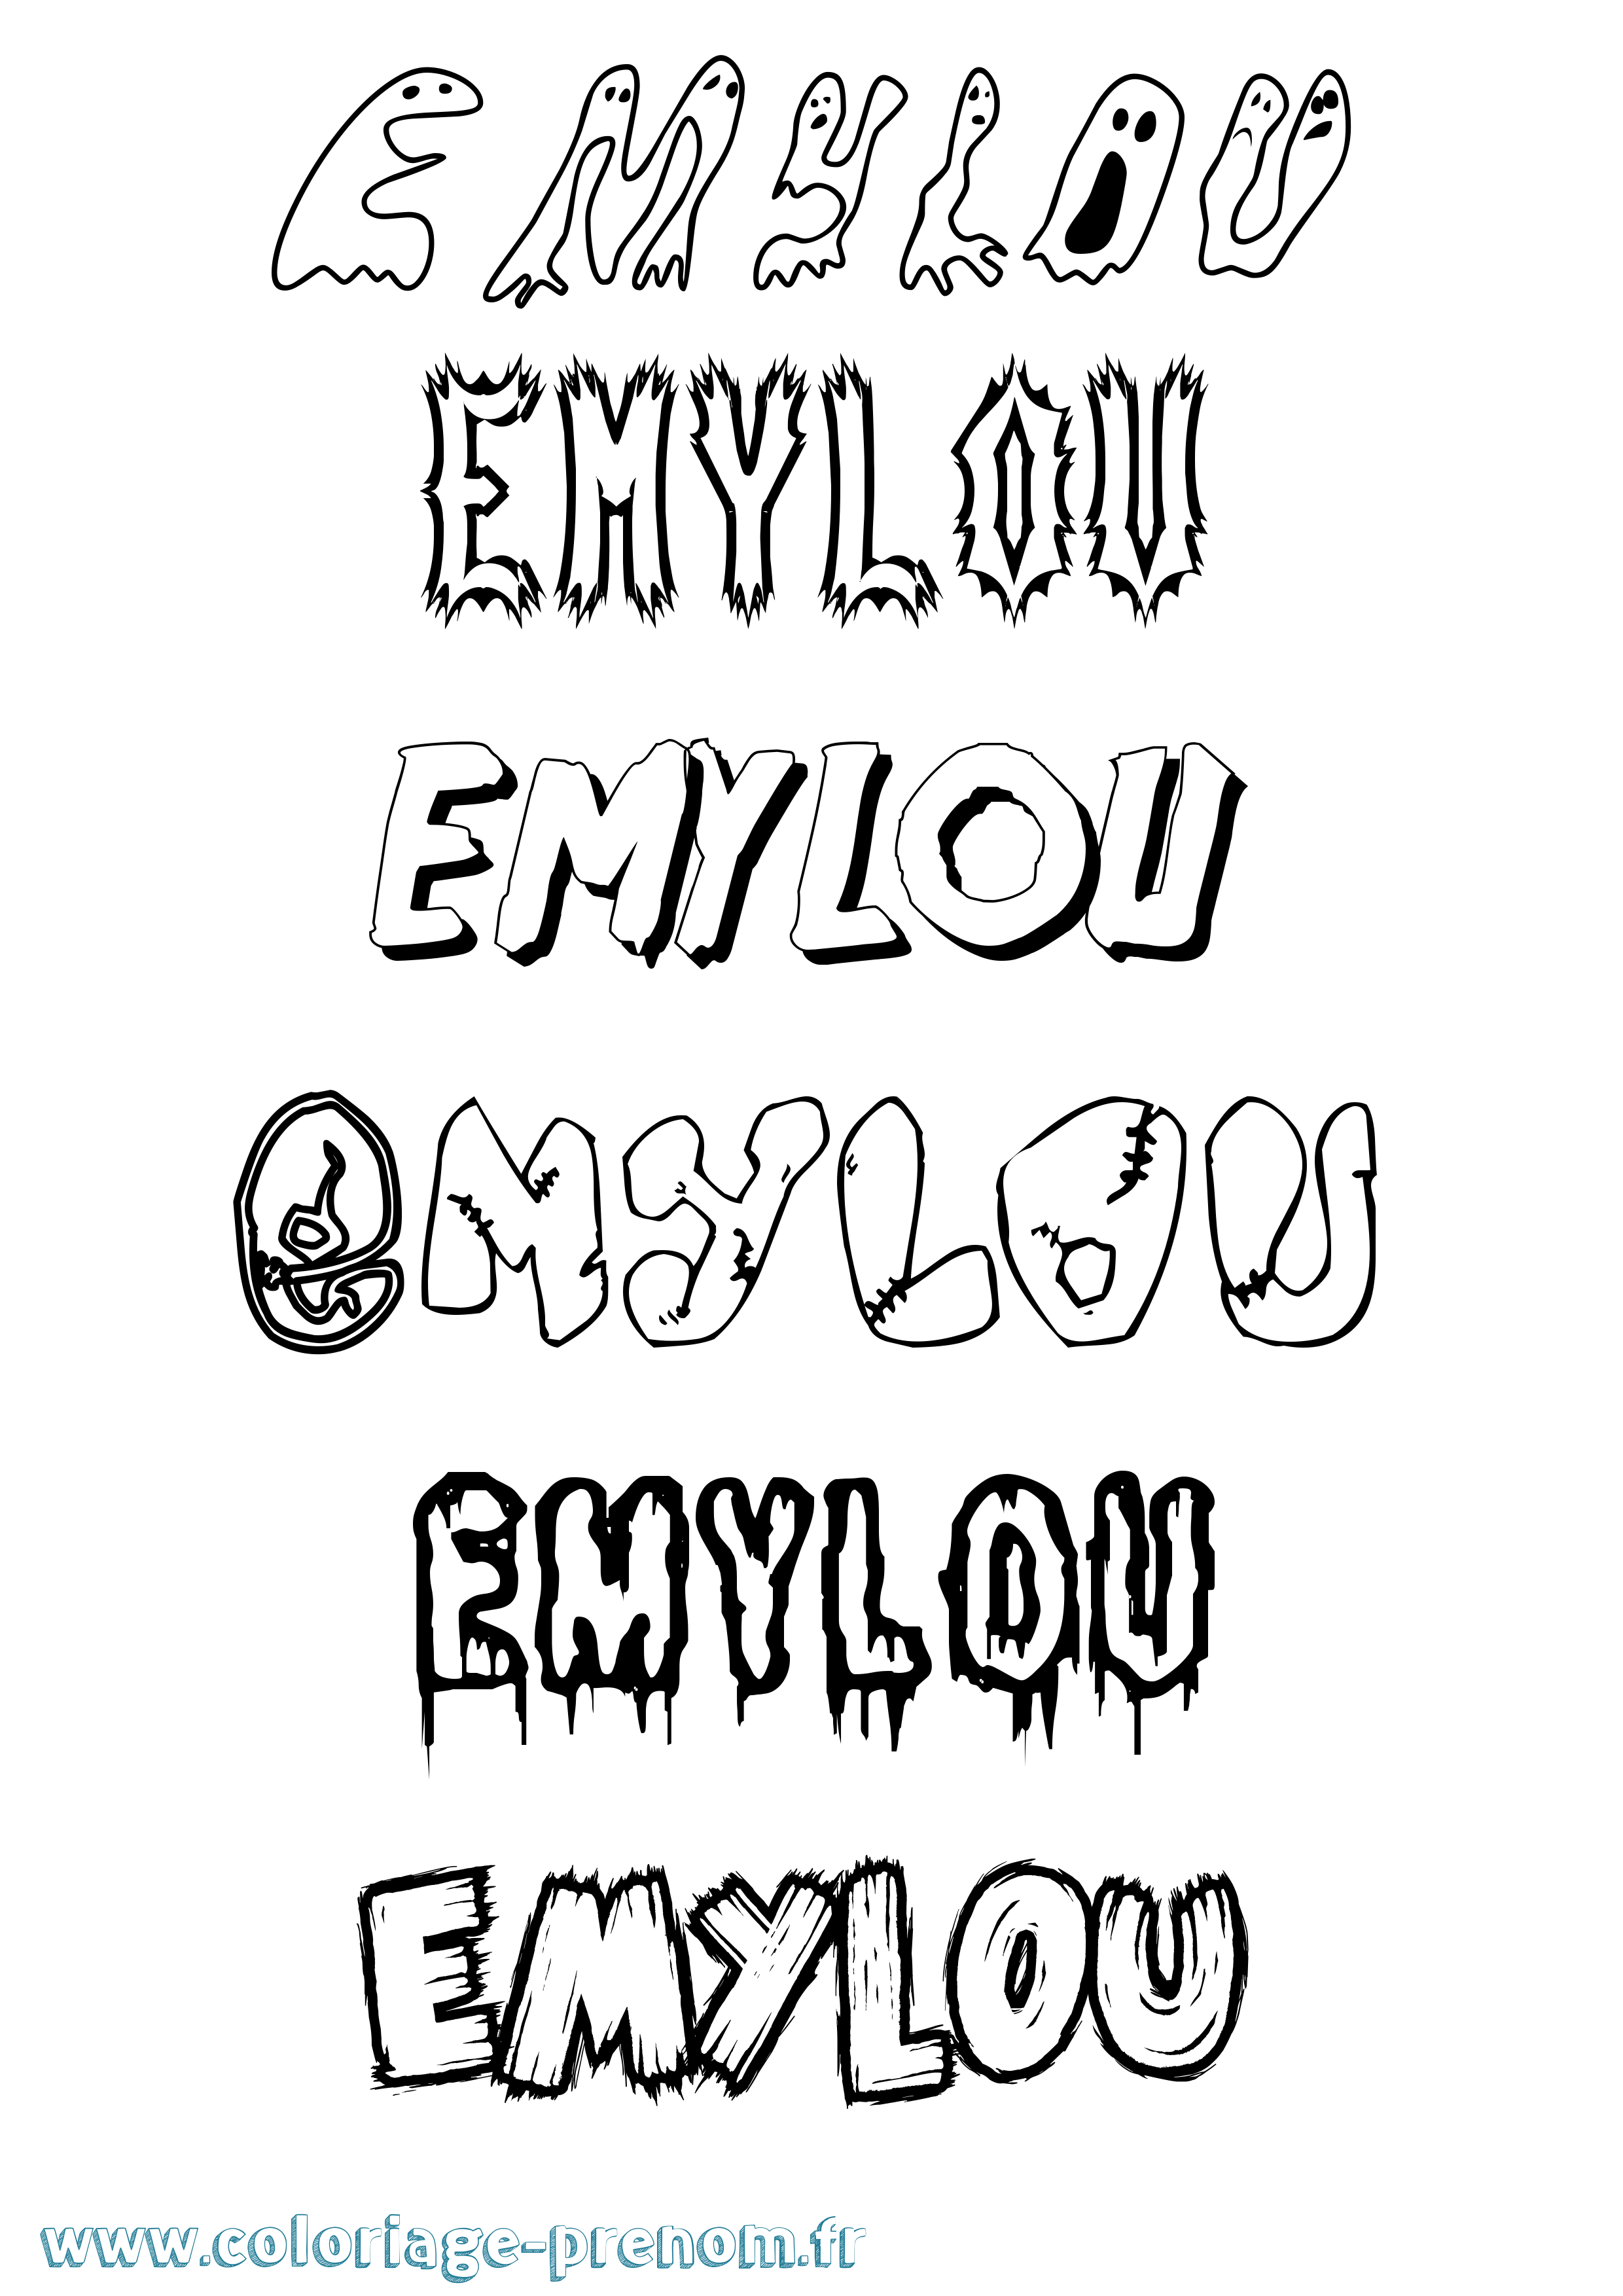 Coloriage prénom Emylou Frisson